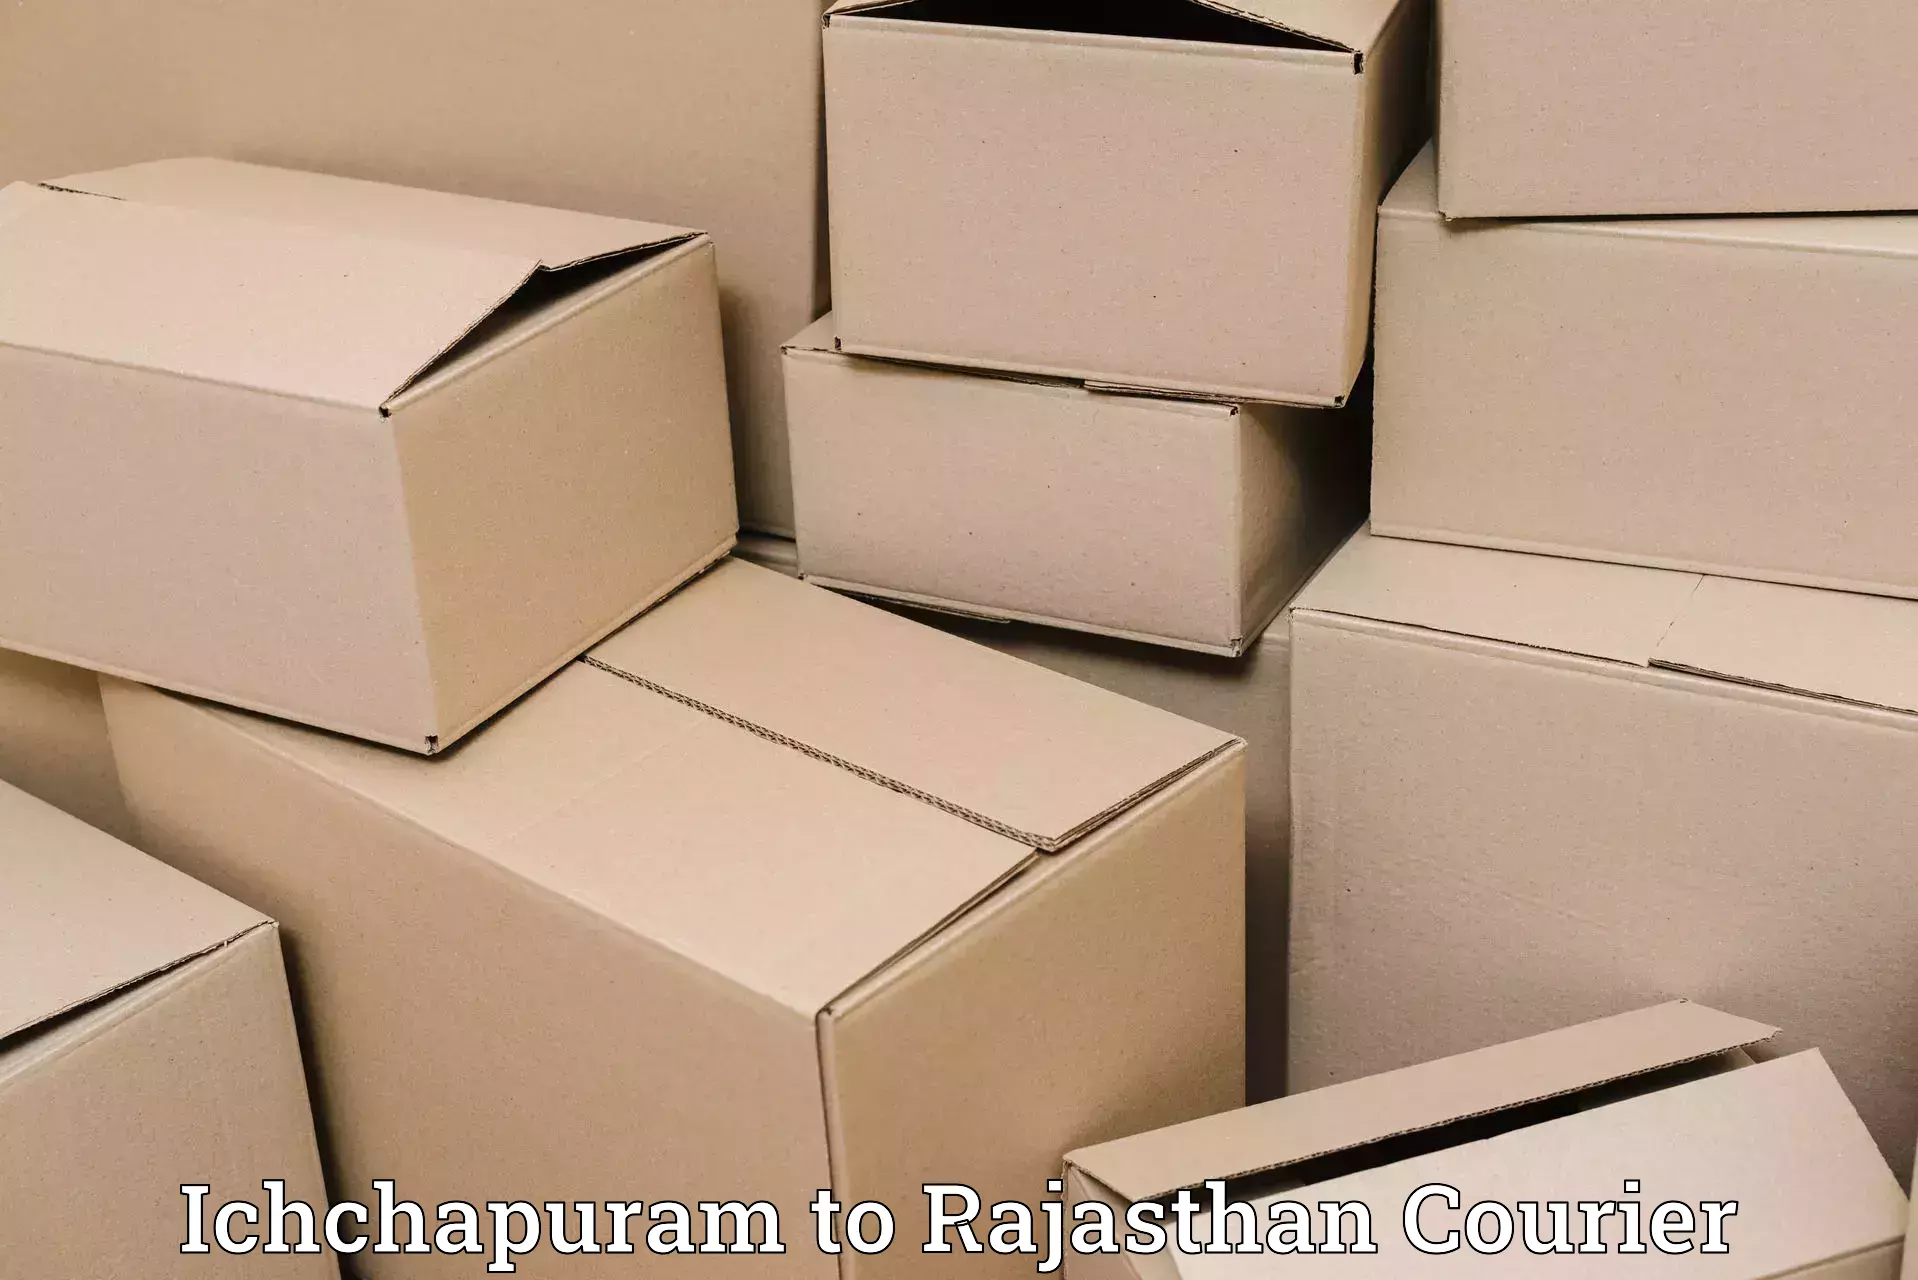 Overnight delivery services Ichchapuram to Raisingh Nagar